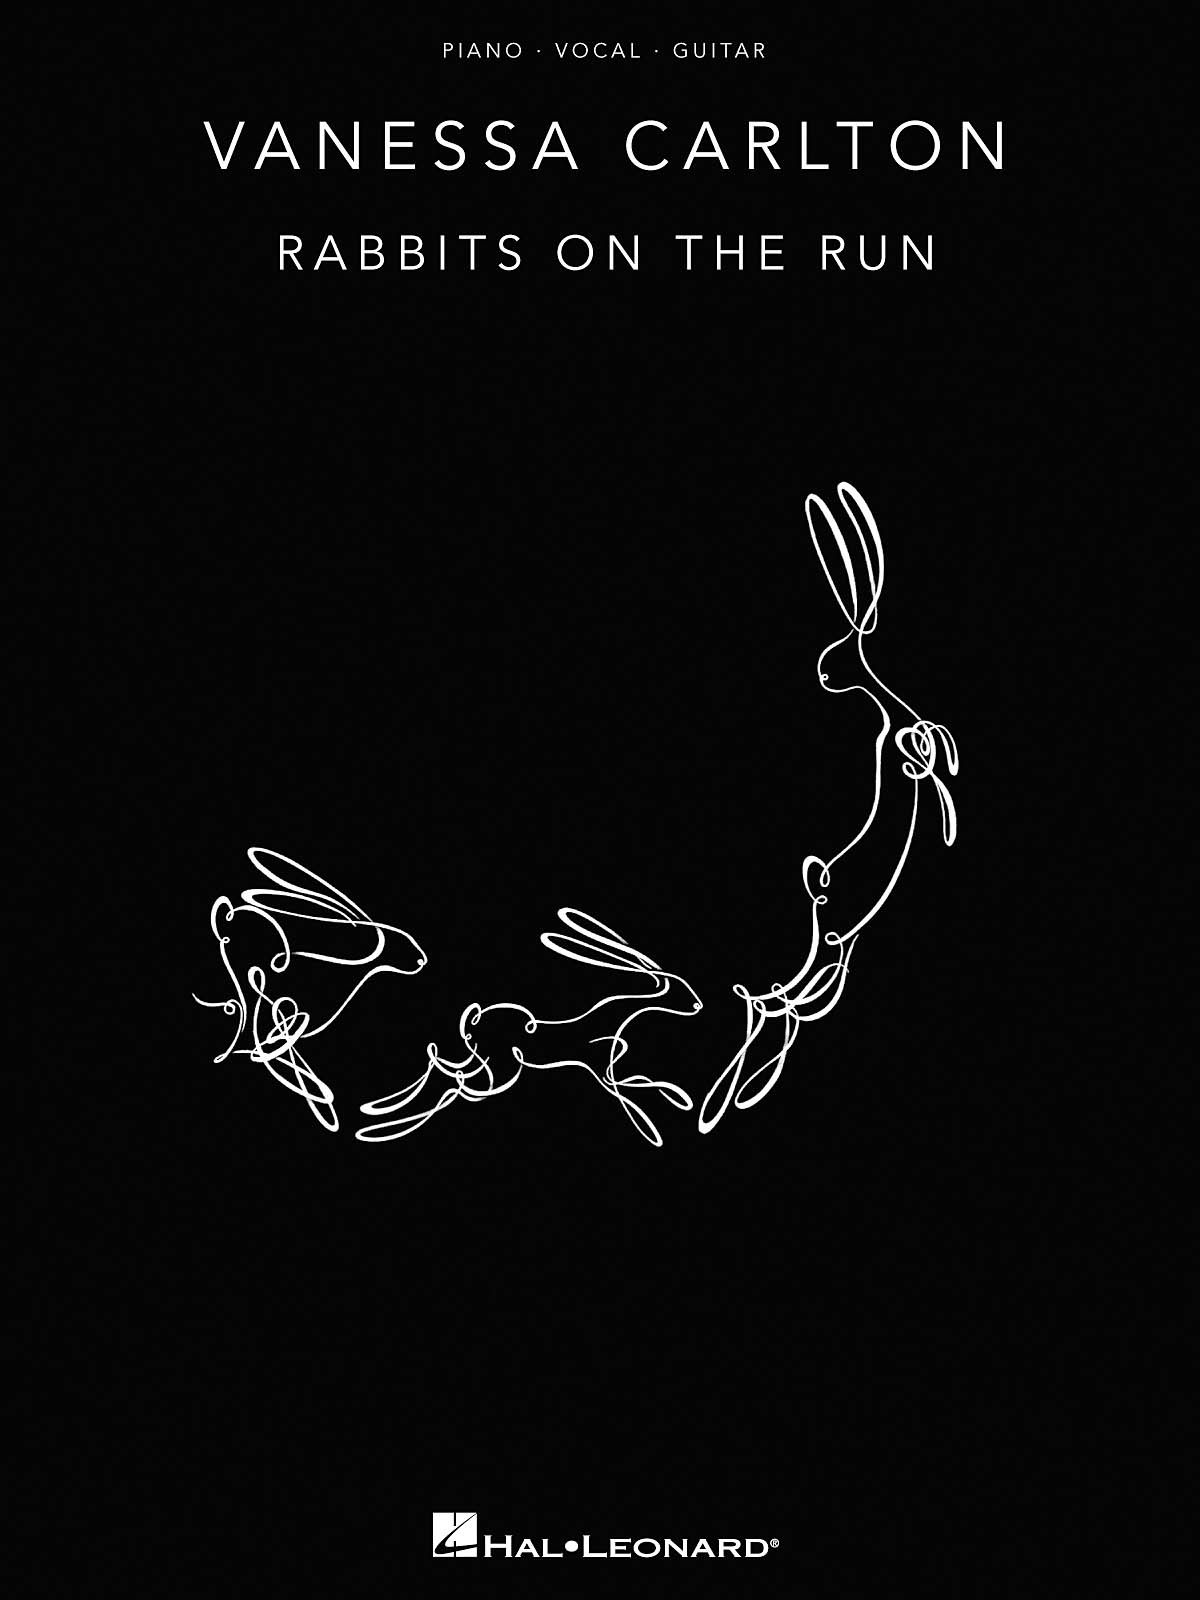 Vanessa Carlton: Rabbits on the Run